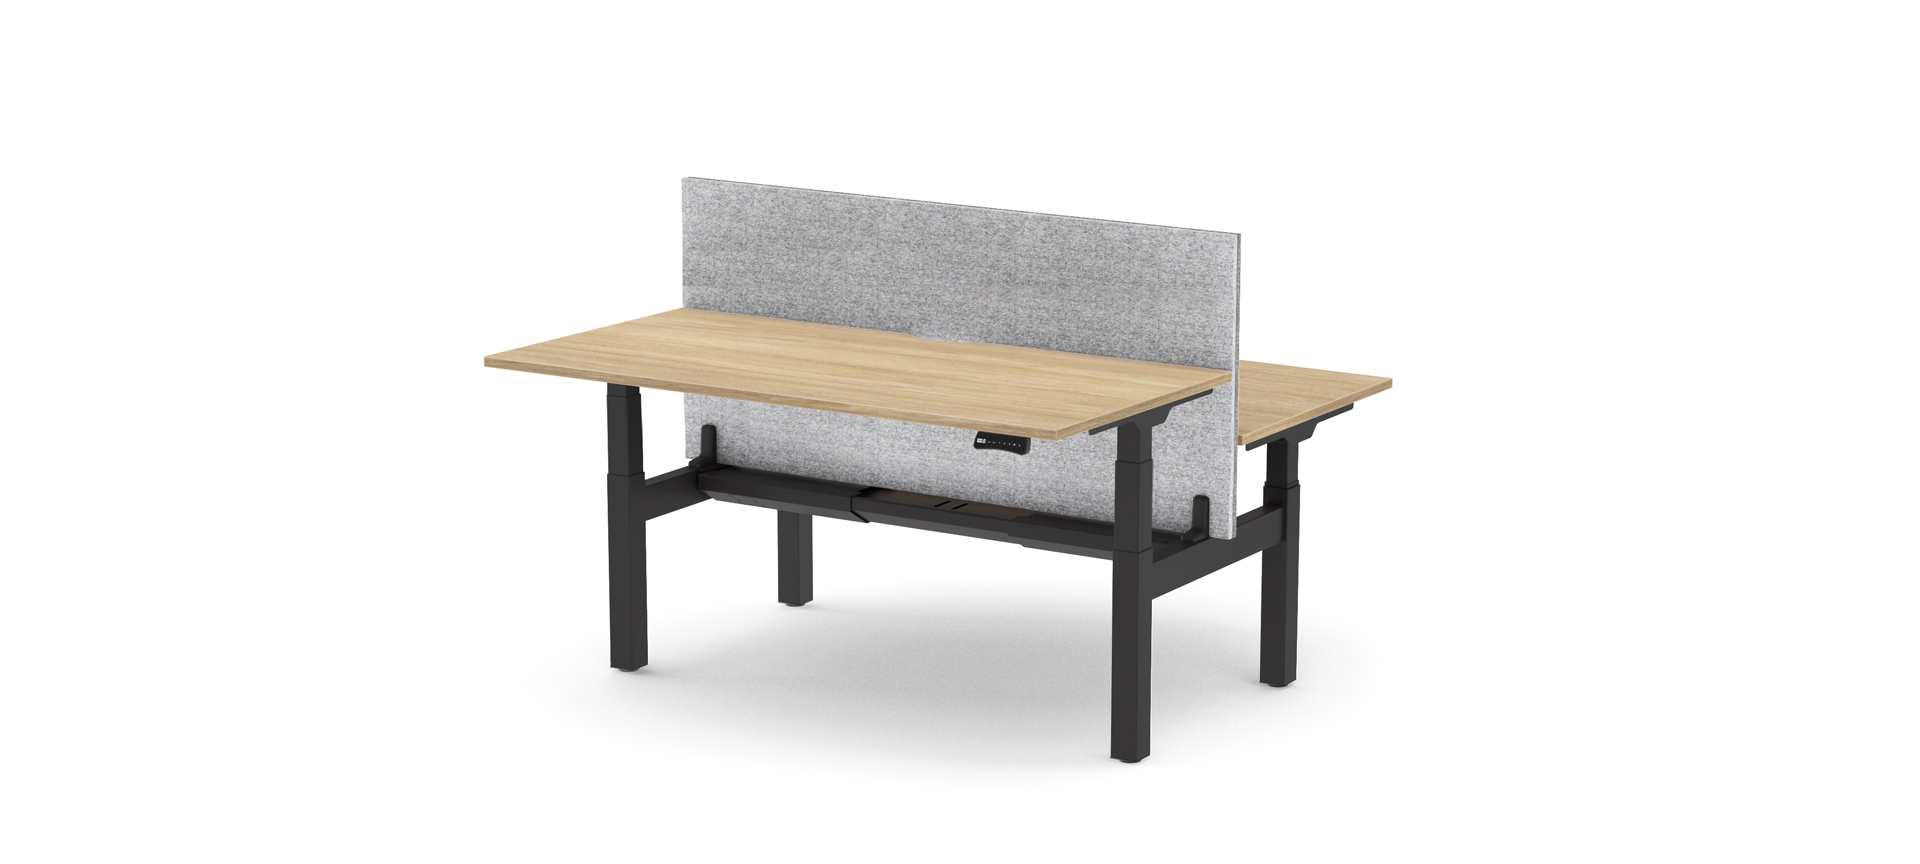 Formetiq Alto 2 sit/stand desk and bench